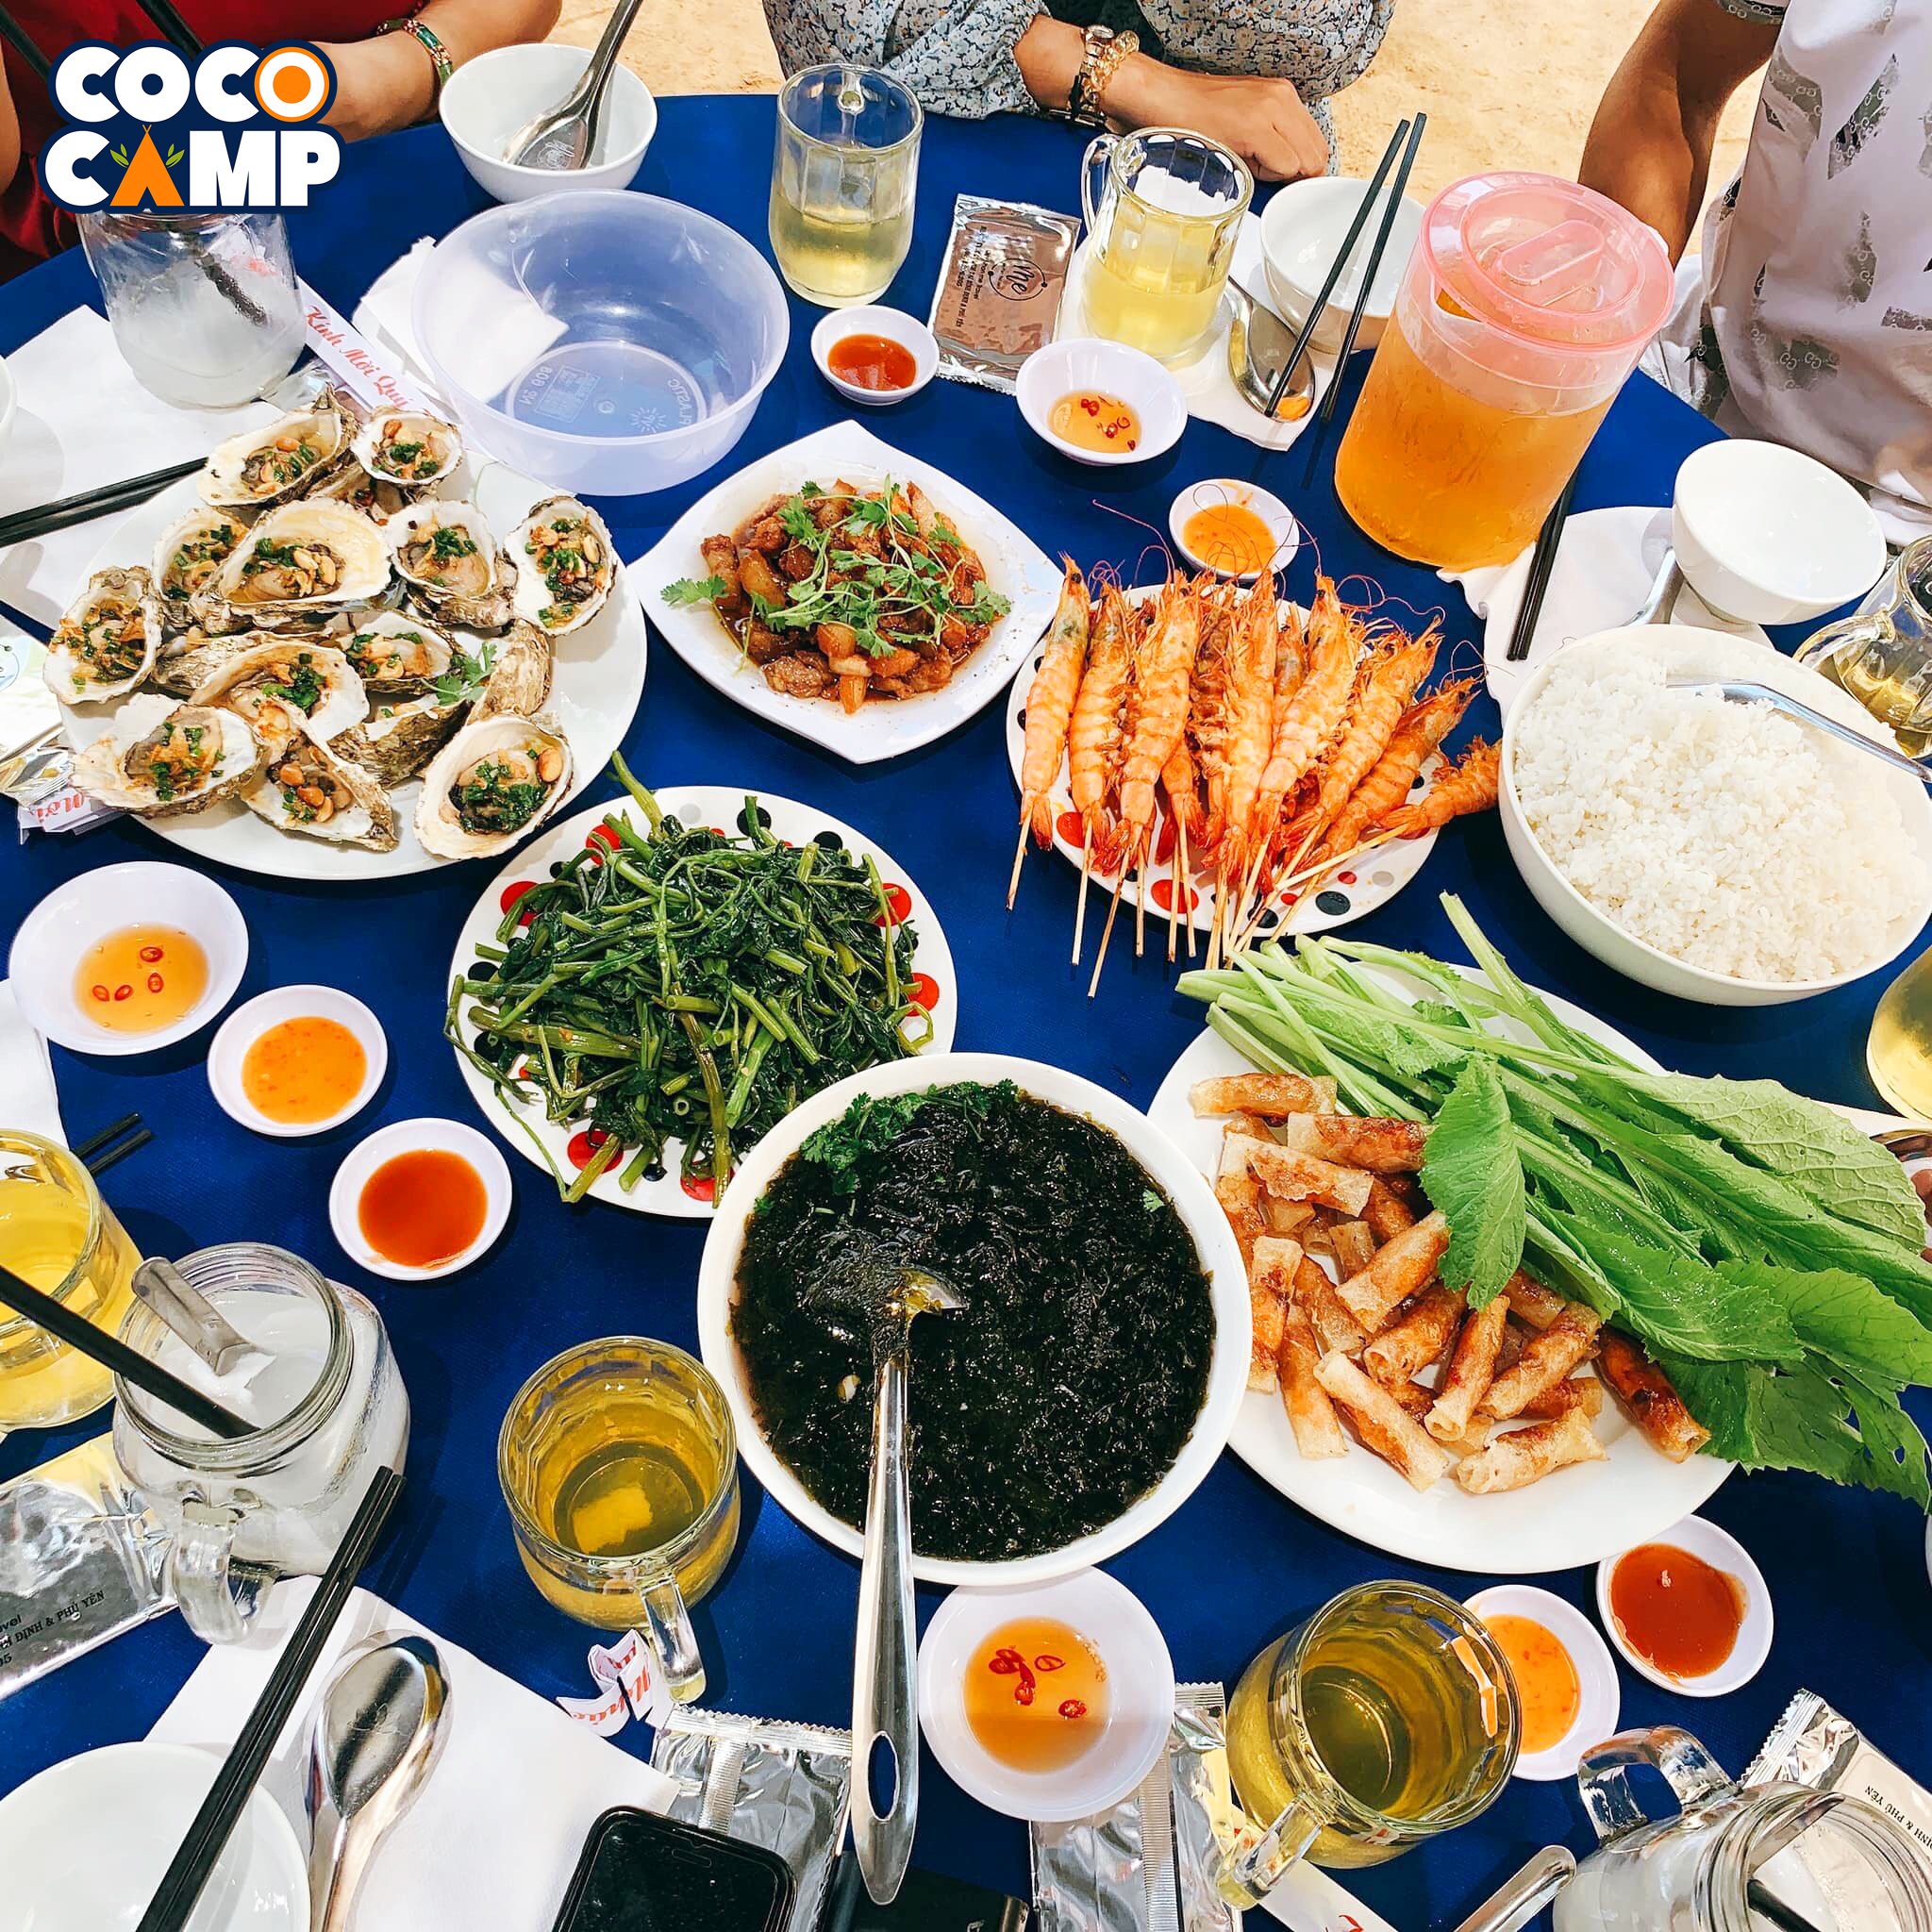 CocoCamp Hòn Khô – Bình Định